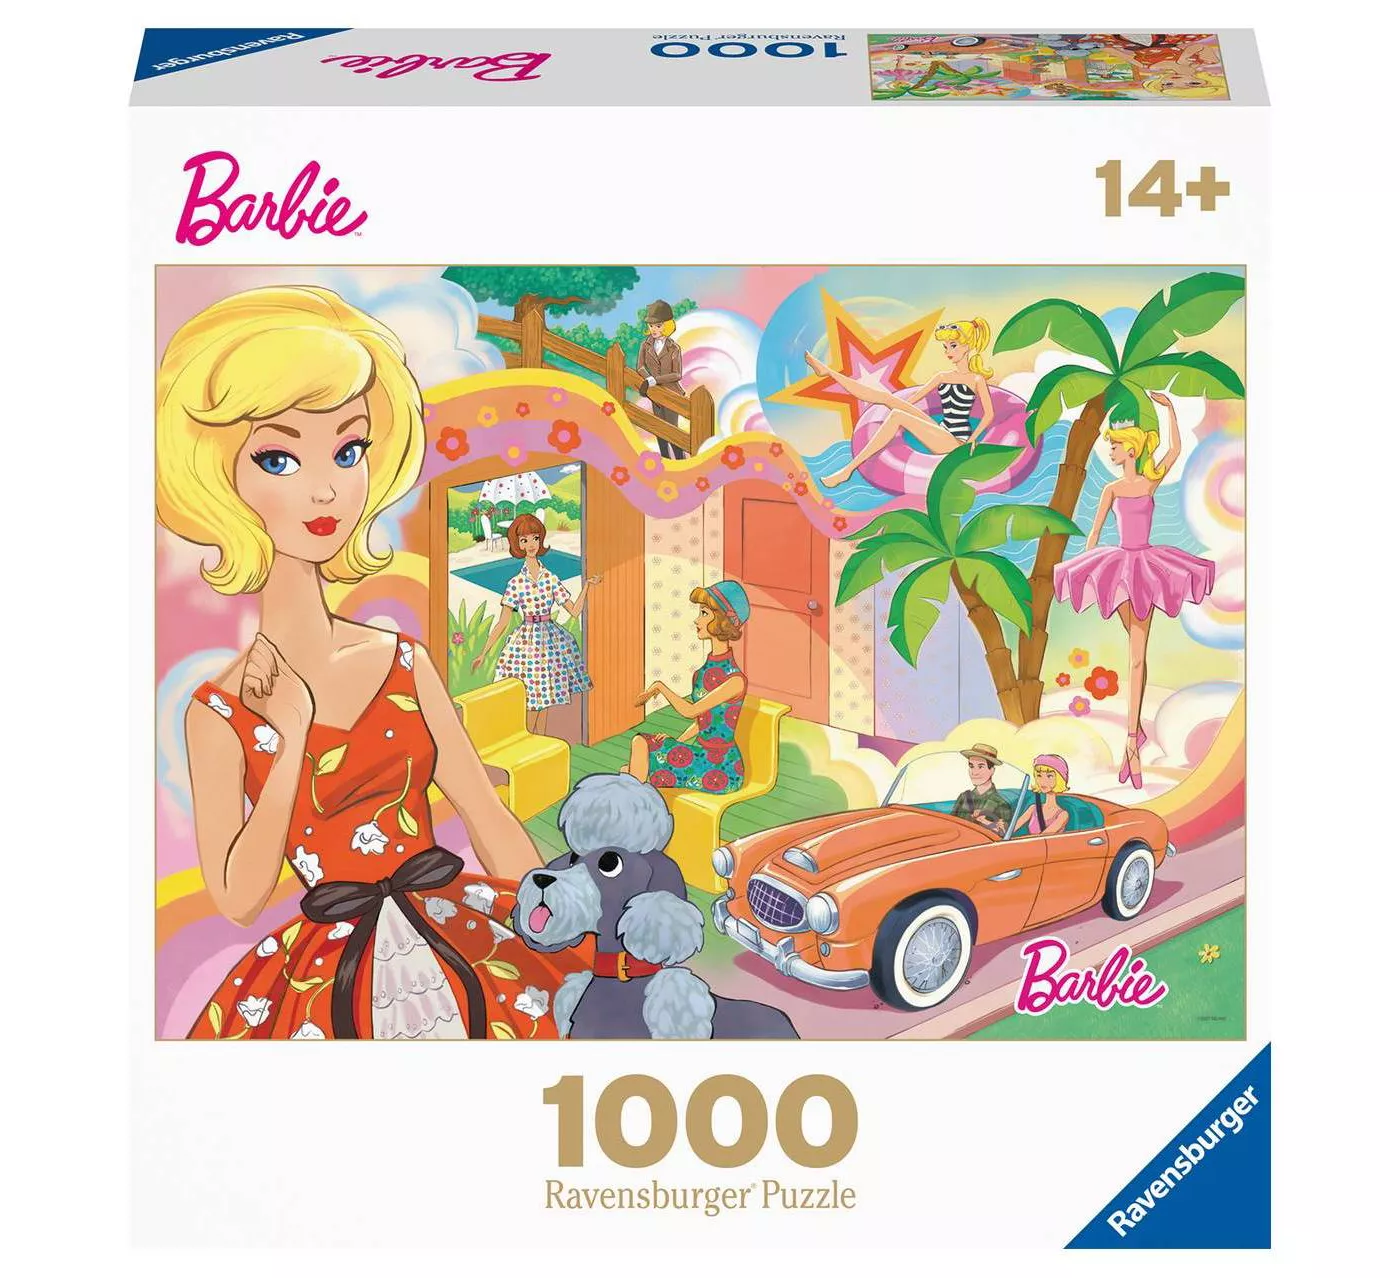 Ravensburger Vintage Barbie 1000 Piece Puzzle